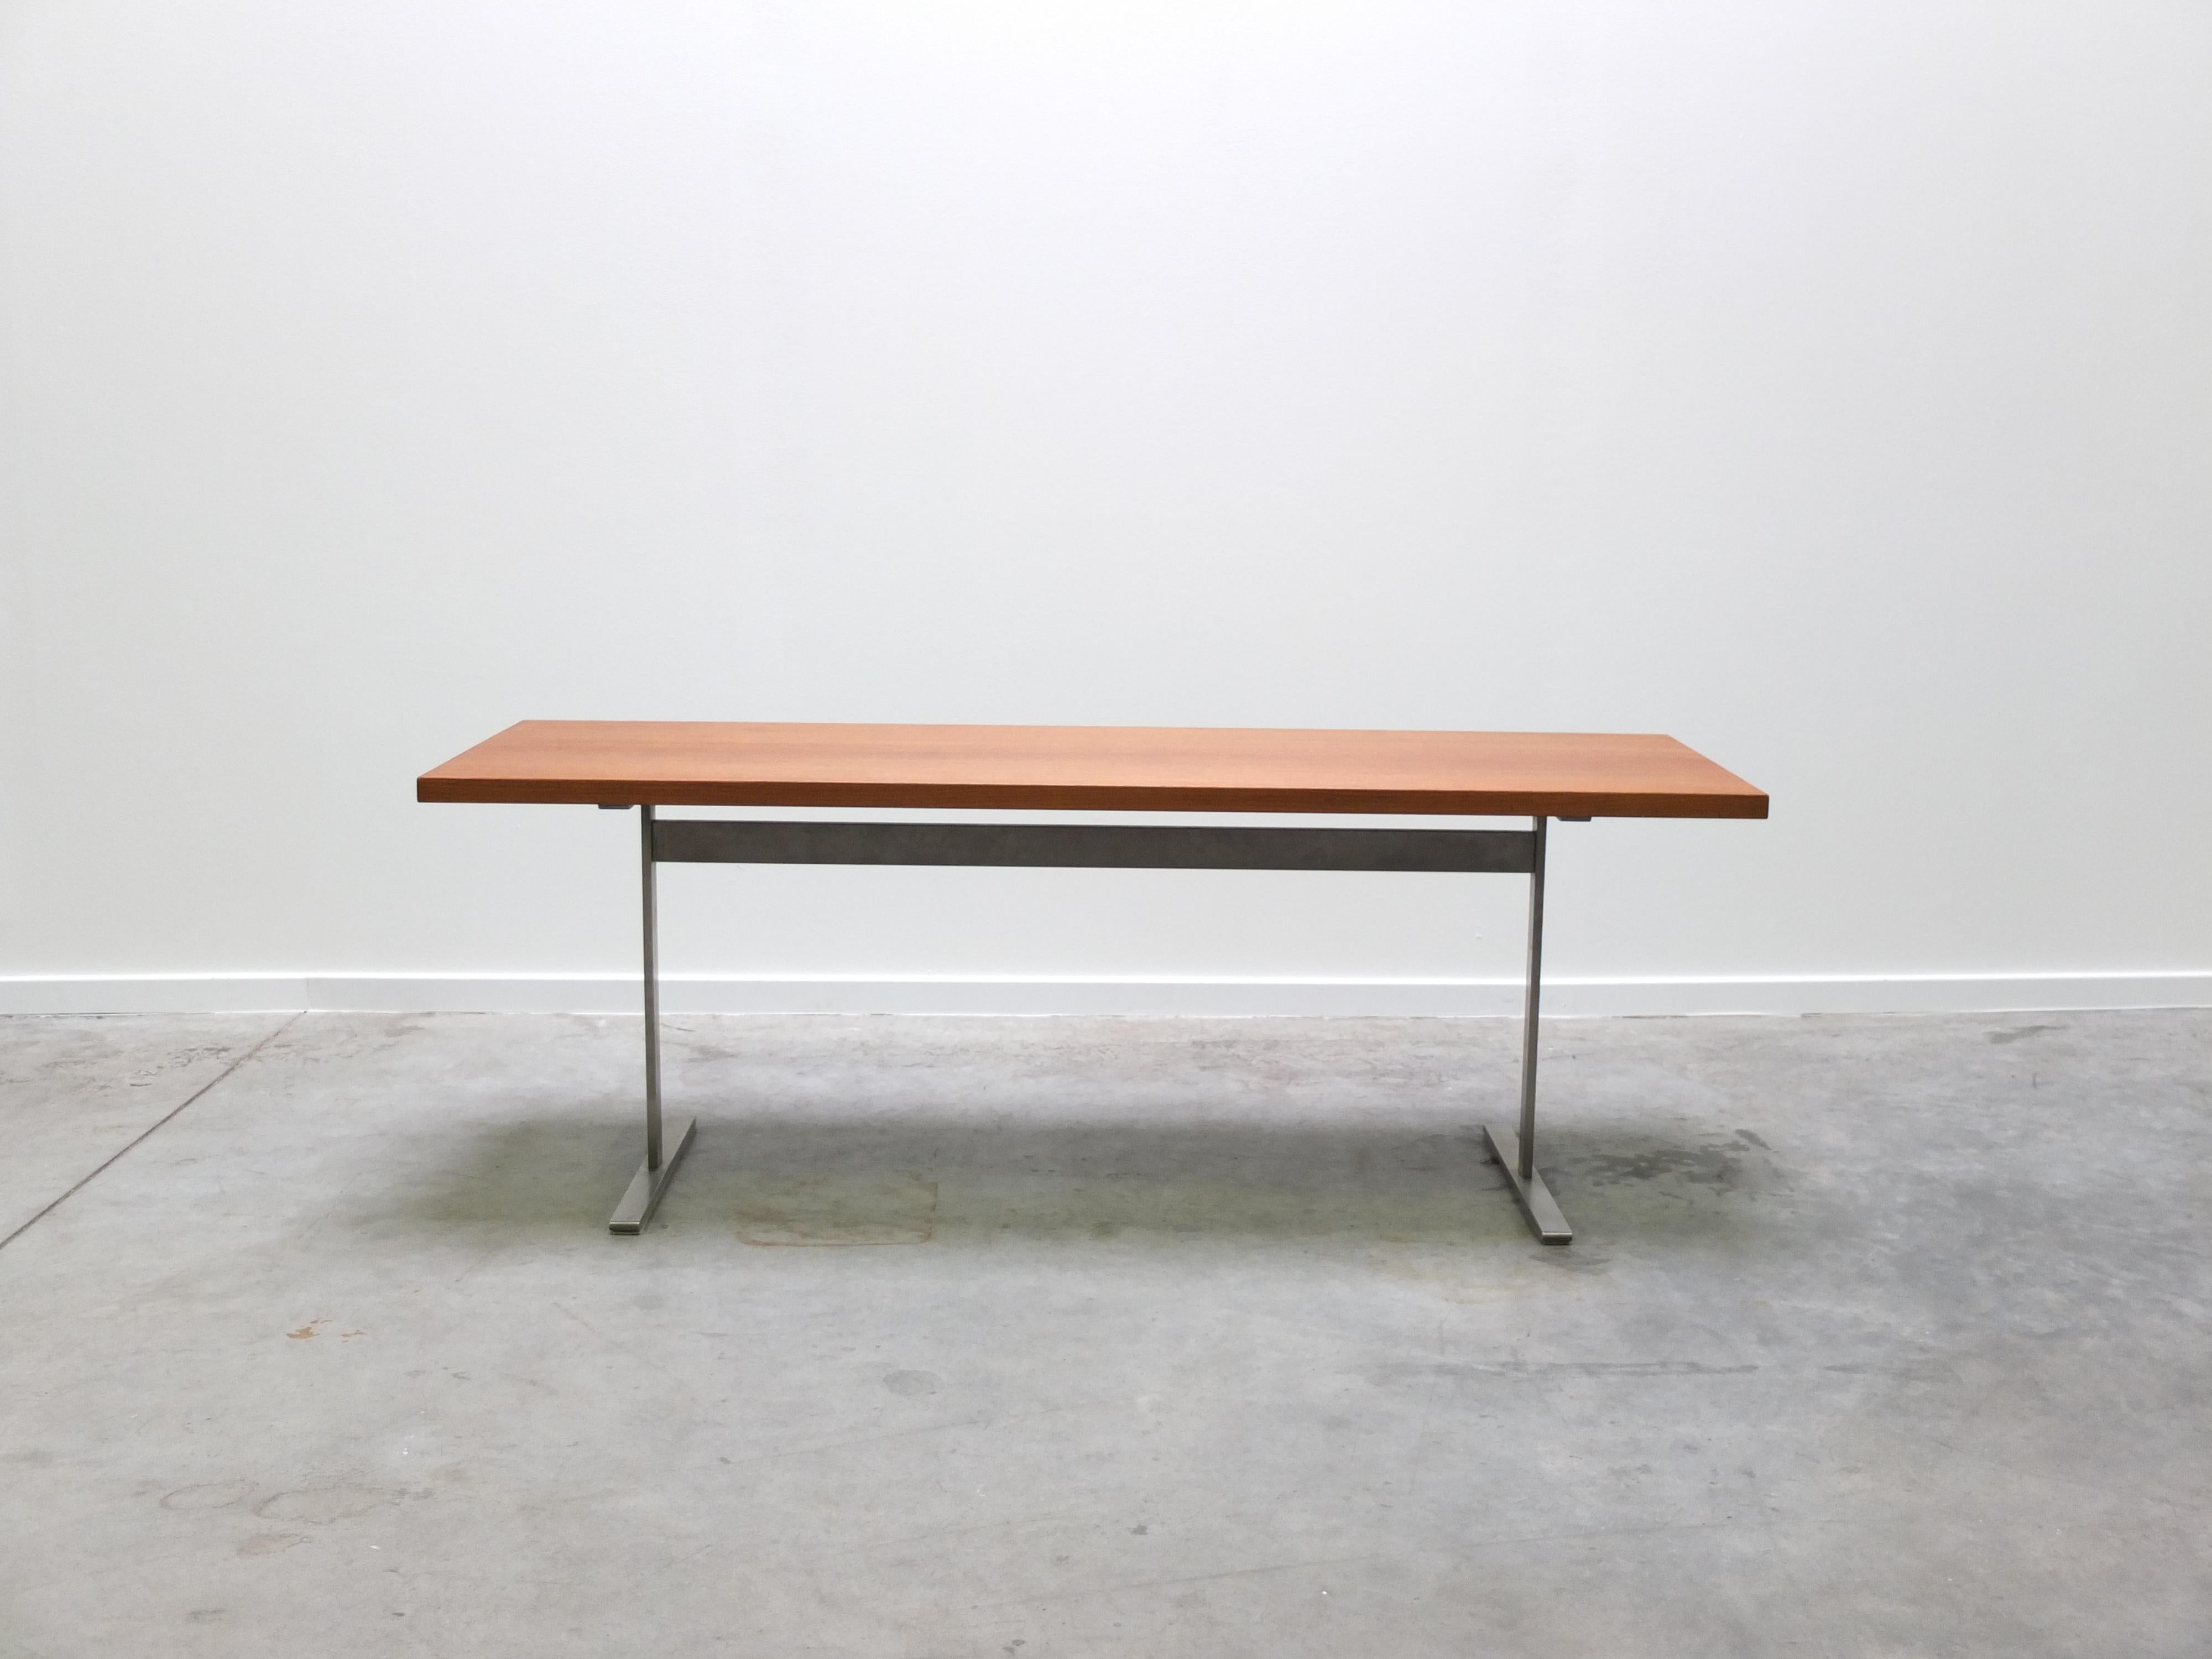 Table basse moderniste dans le style d'Arne Jacobsen avec une base en métal et un grand plateau rectangulaire en teck. Une production danoise de très haute qualité. Le dessus a été refini professionnellement. En très bon état.